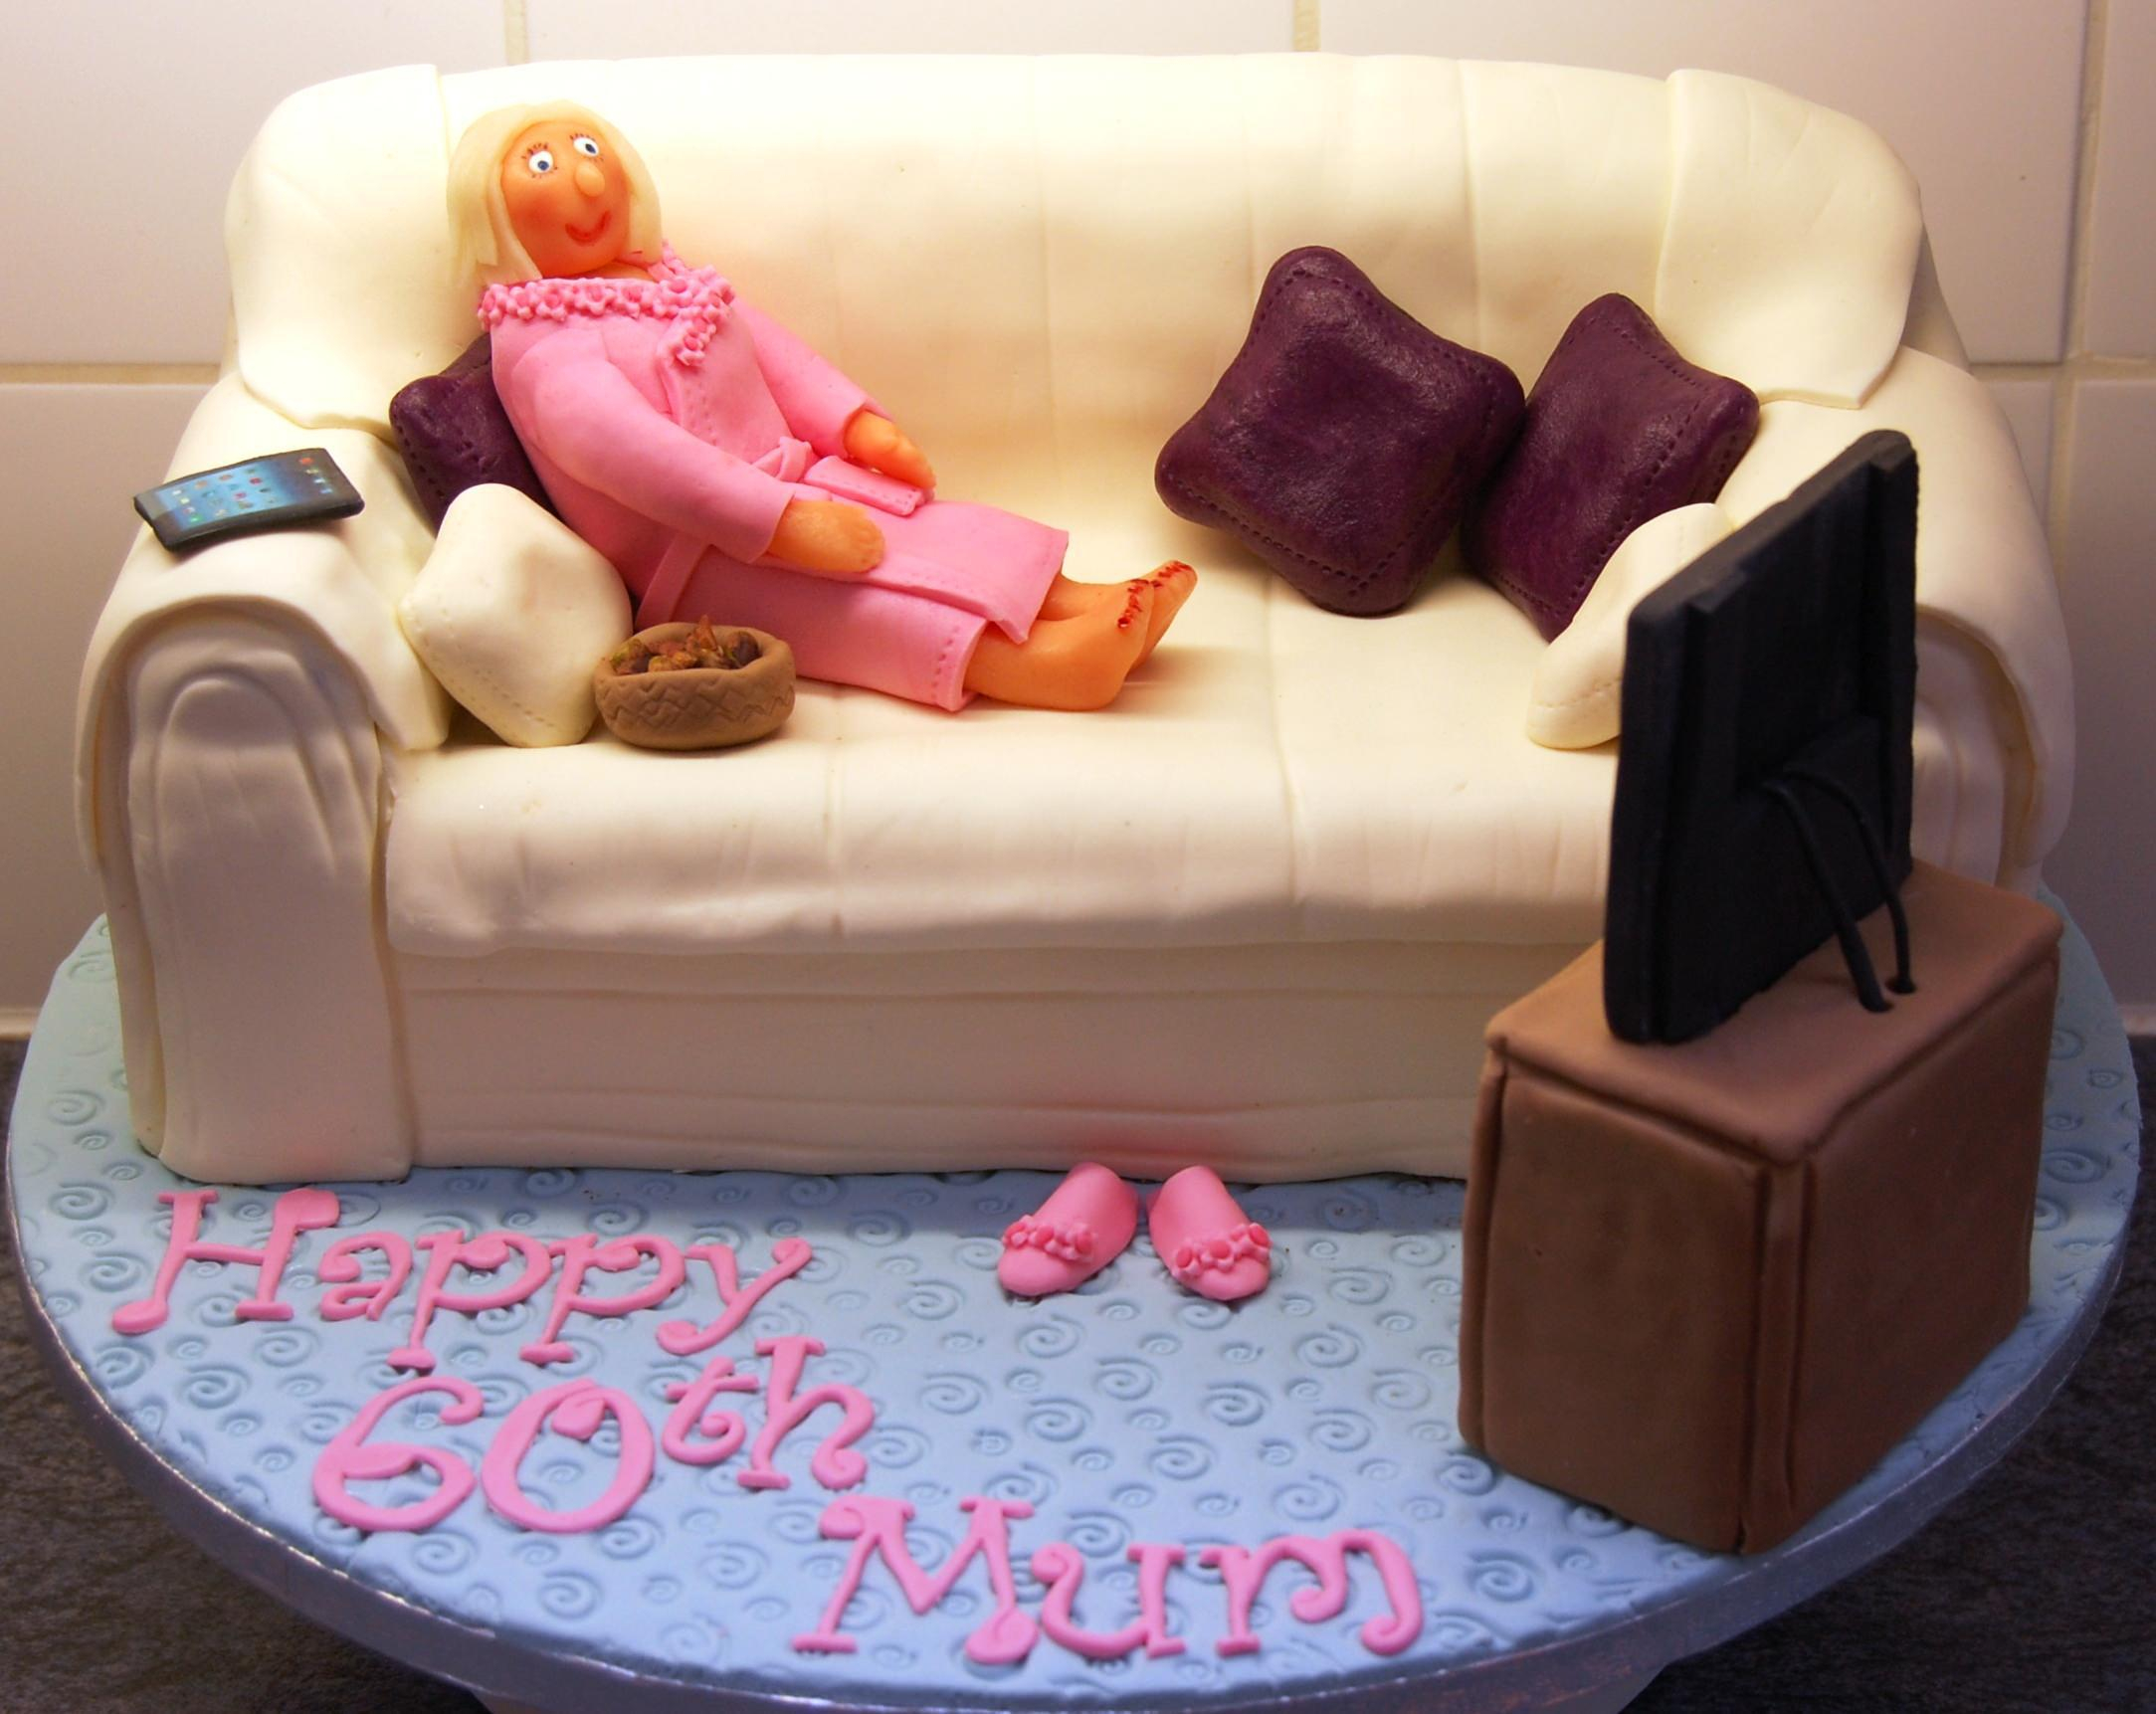 60th birthday cake mum